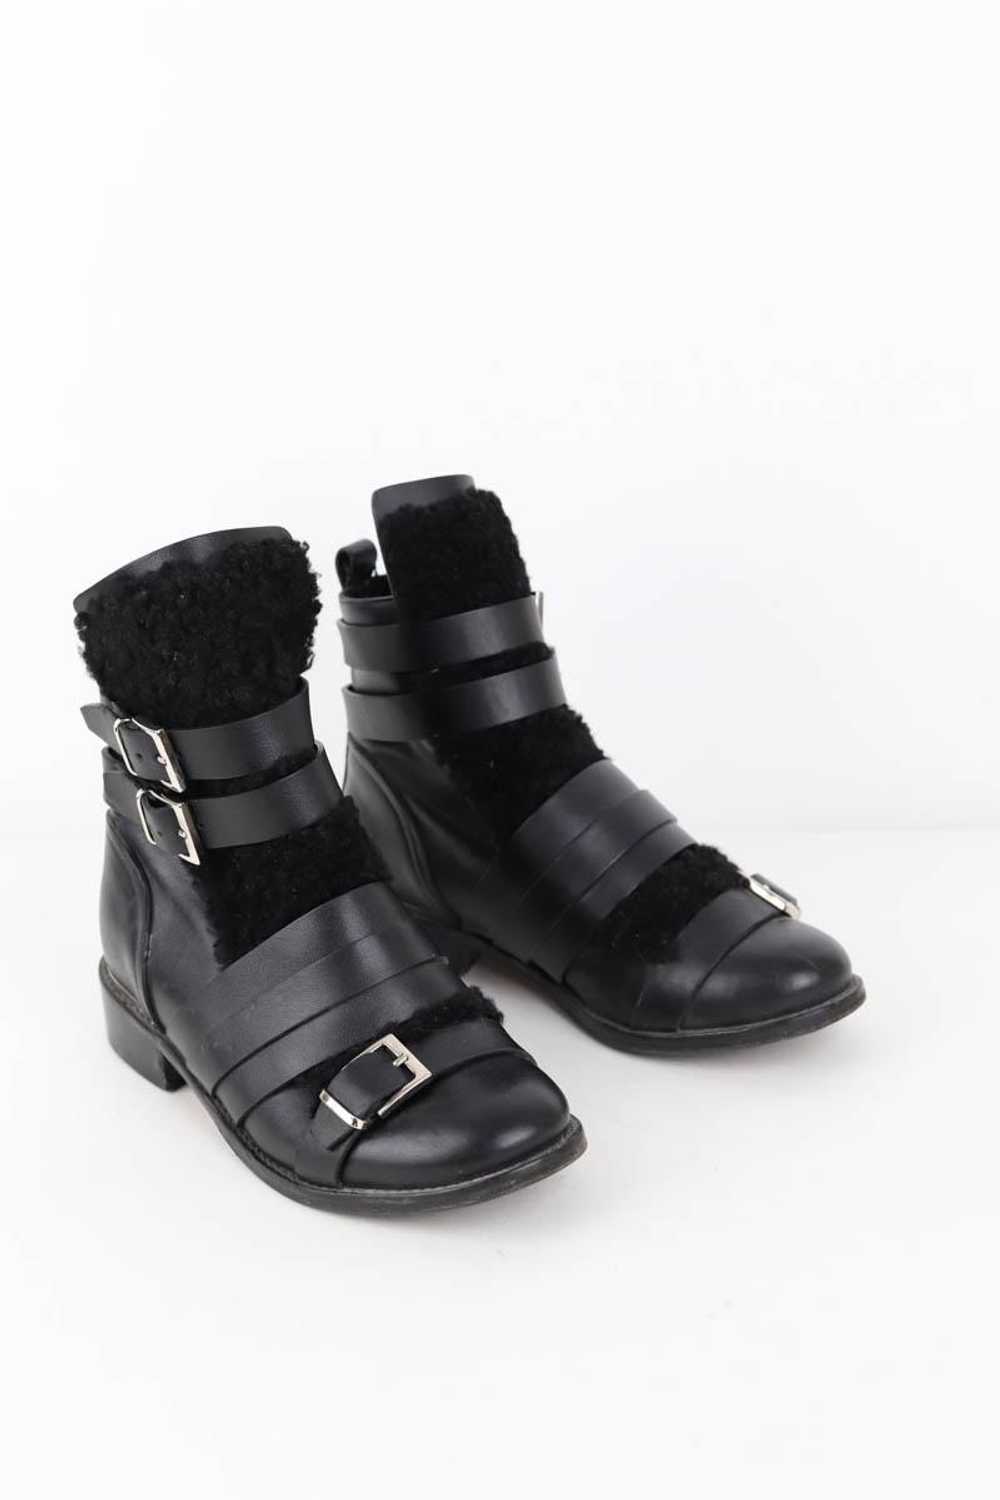 Circular Clothing Boots Iro noir. Matière princip… - image 3